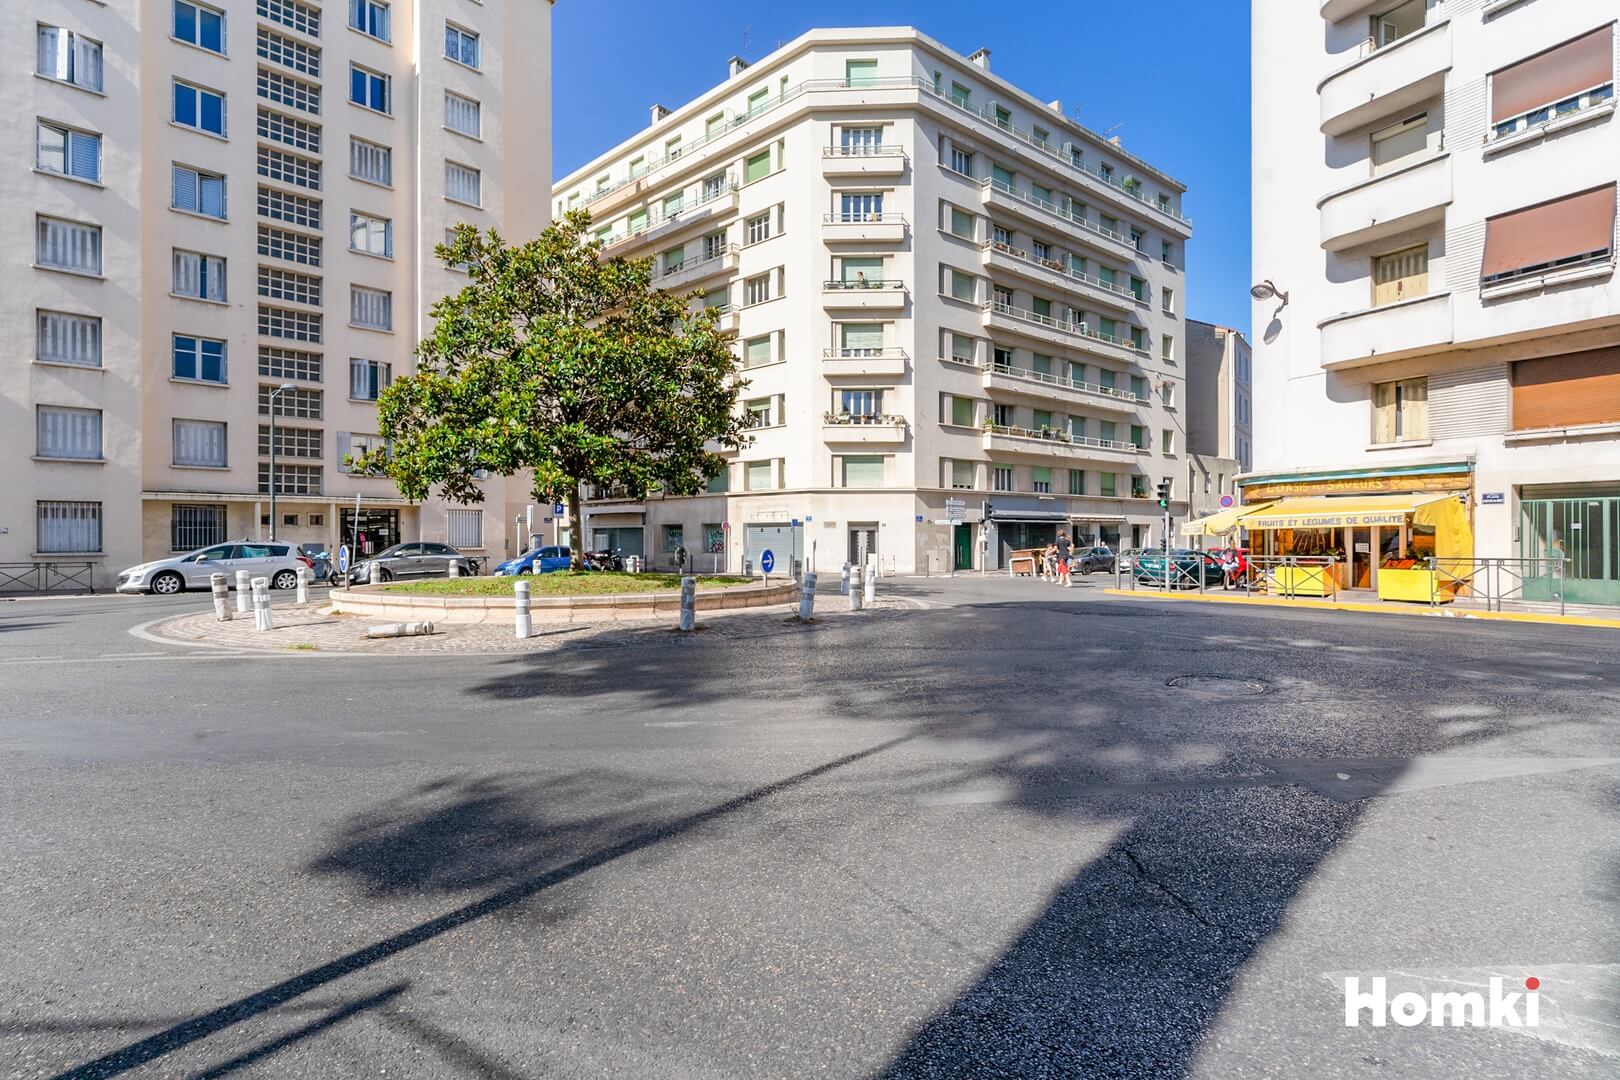 Homki - Vente Appartement  de 77.0 m² à Marseille 13005